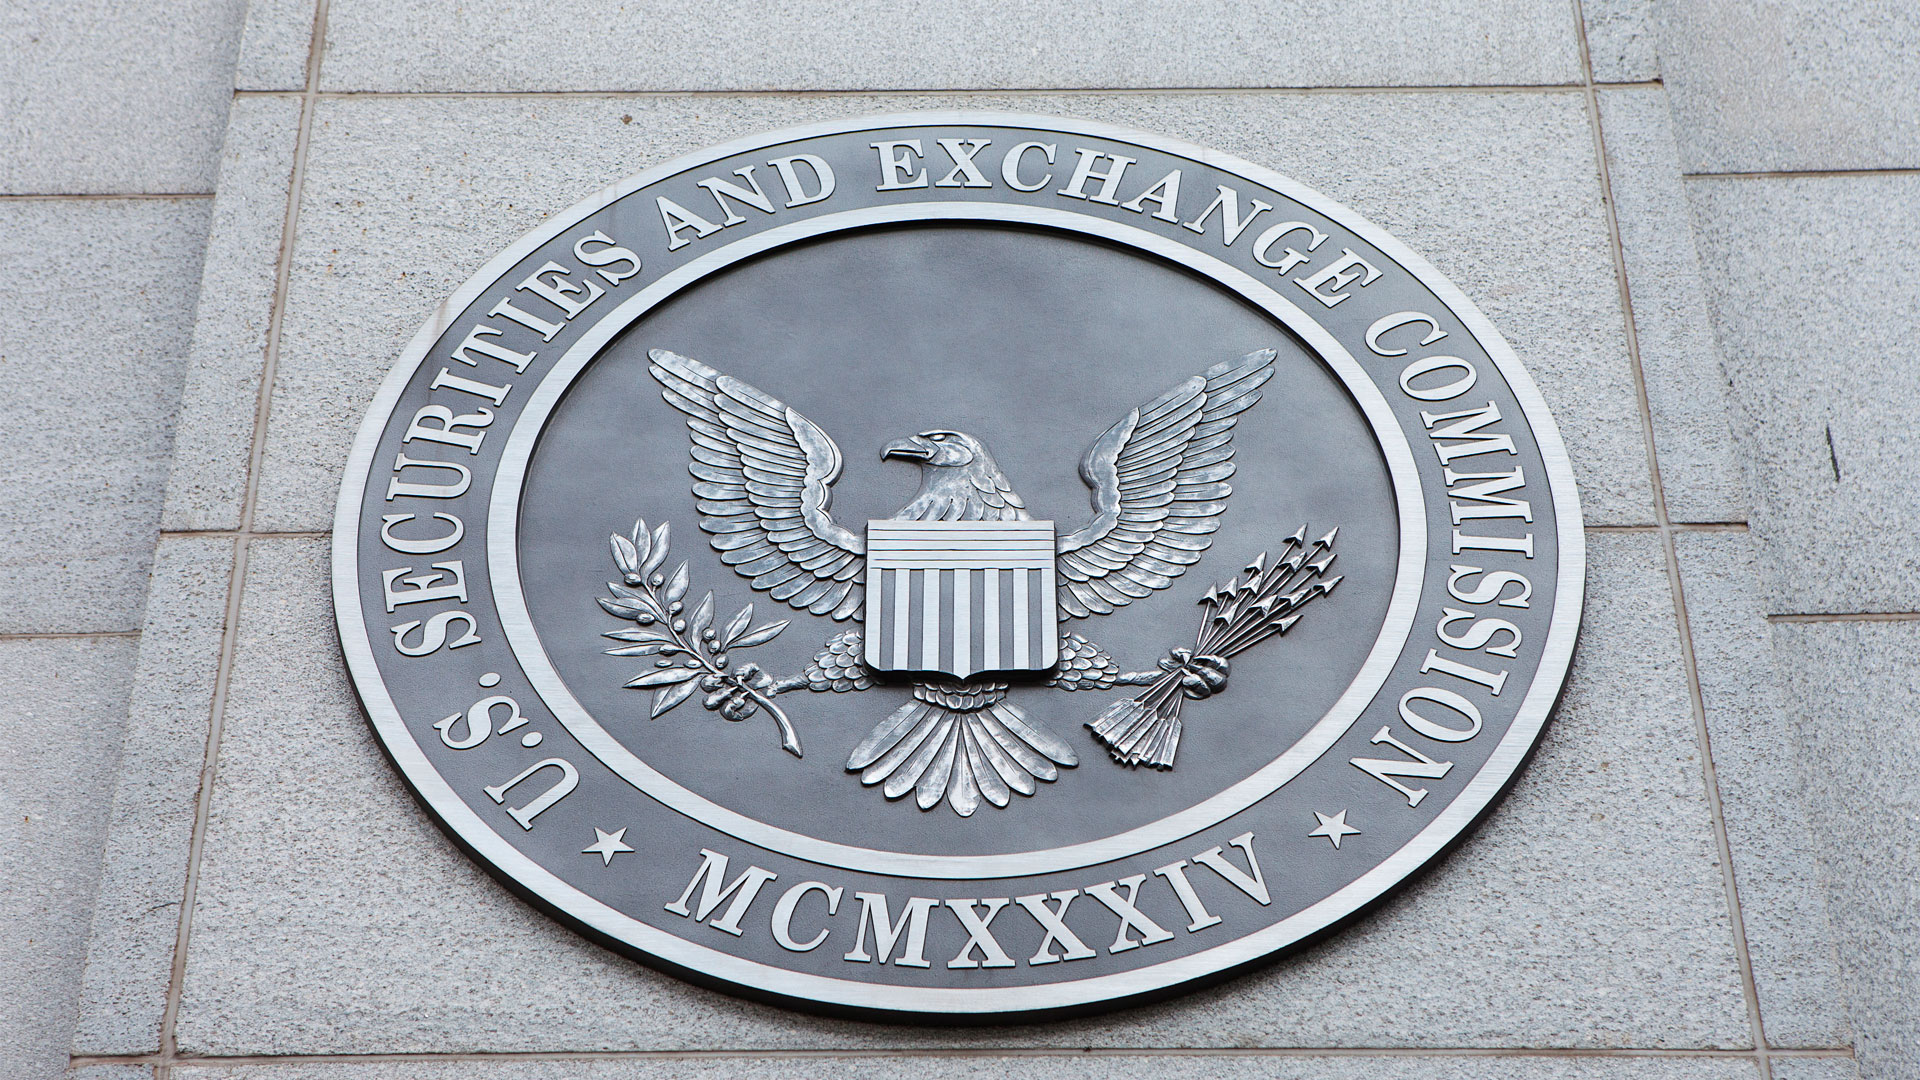 Emblema da SEC (Securities Exchange Commission), a Comissão de Valores Mobiliários dos EUA.